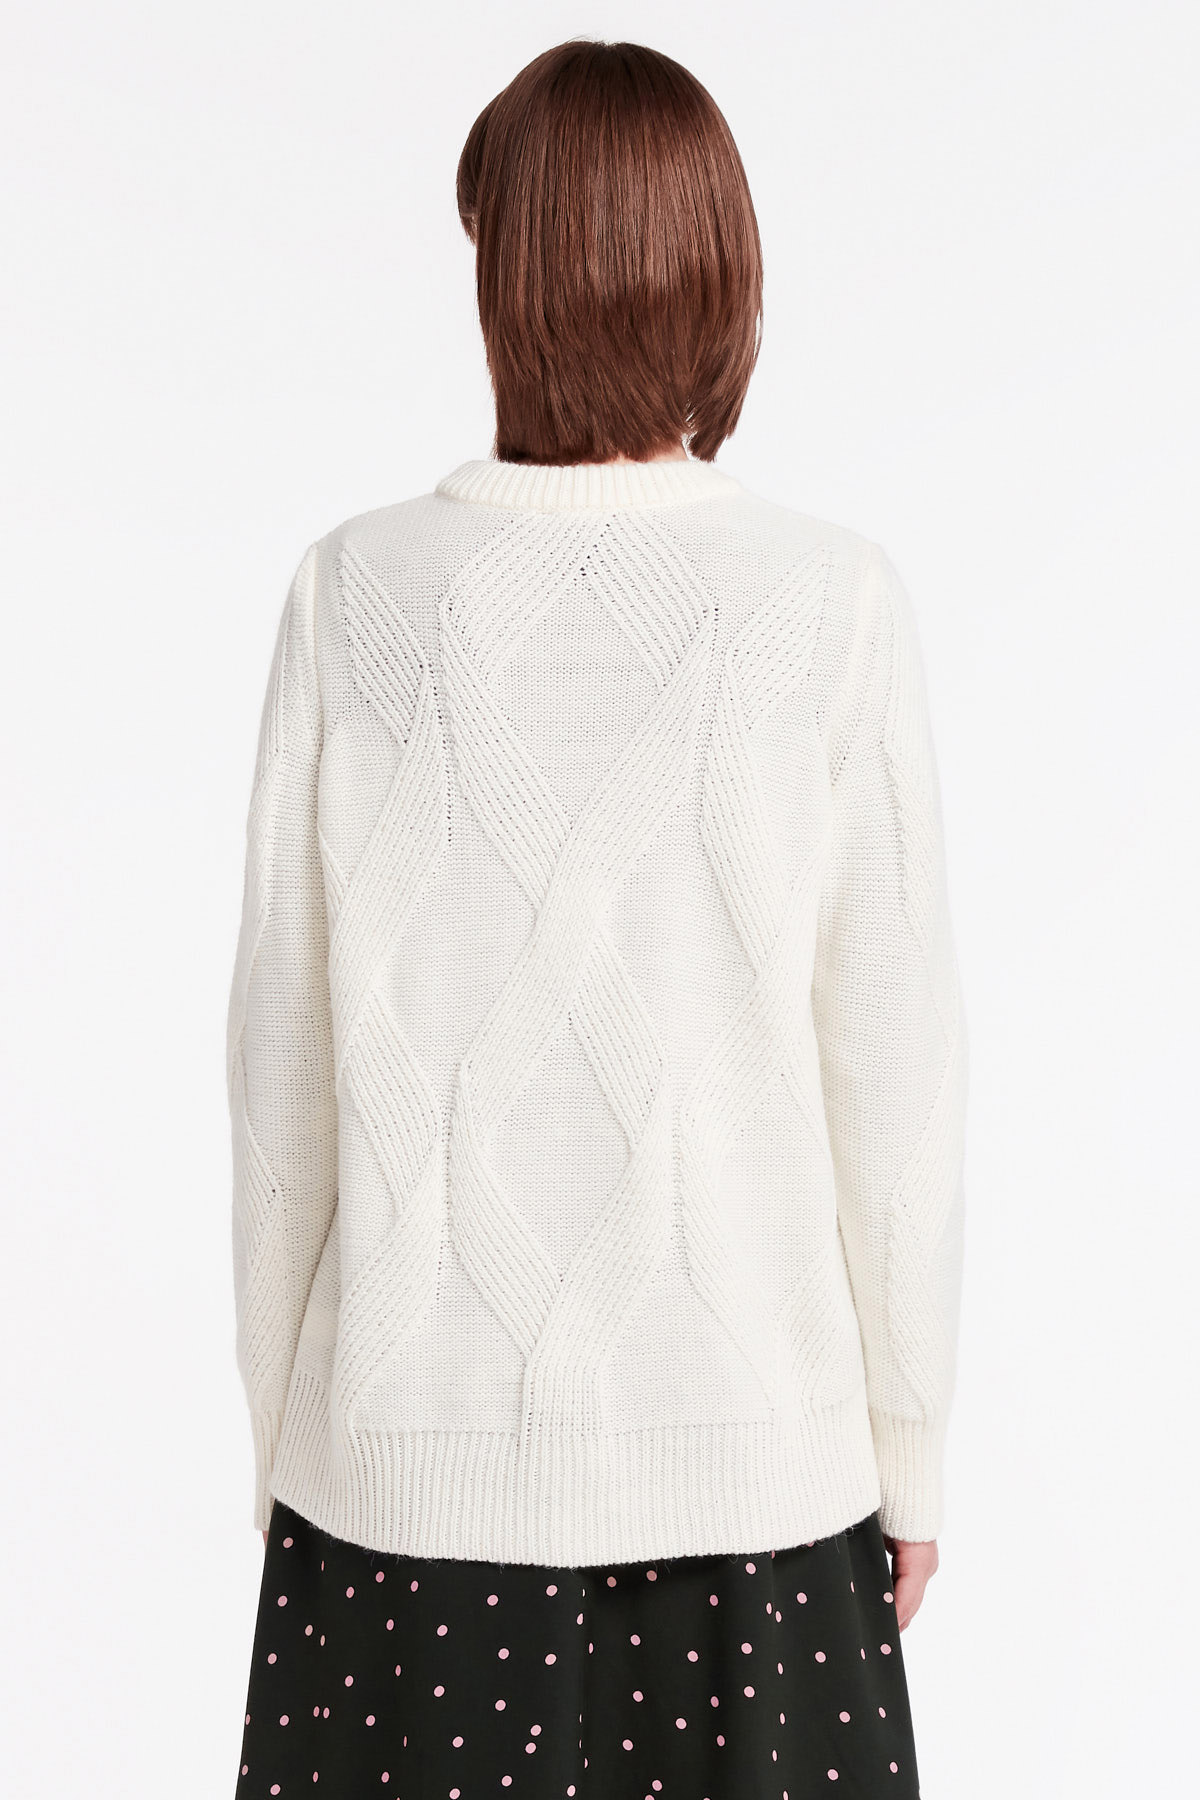 White free knit sweater, photo 4